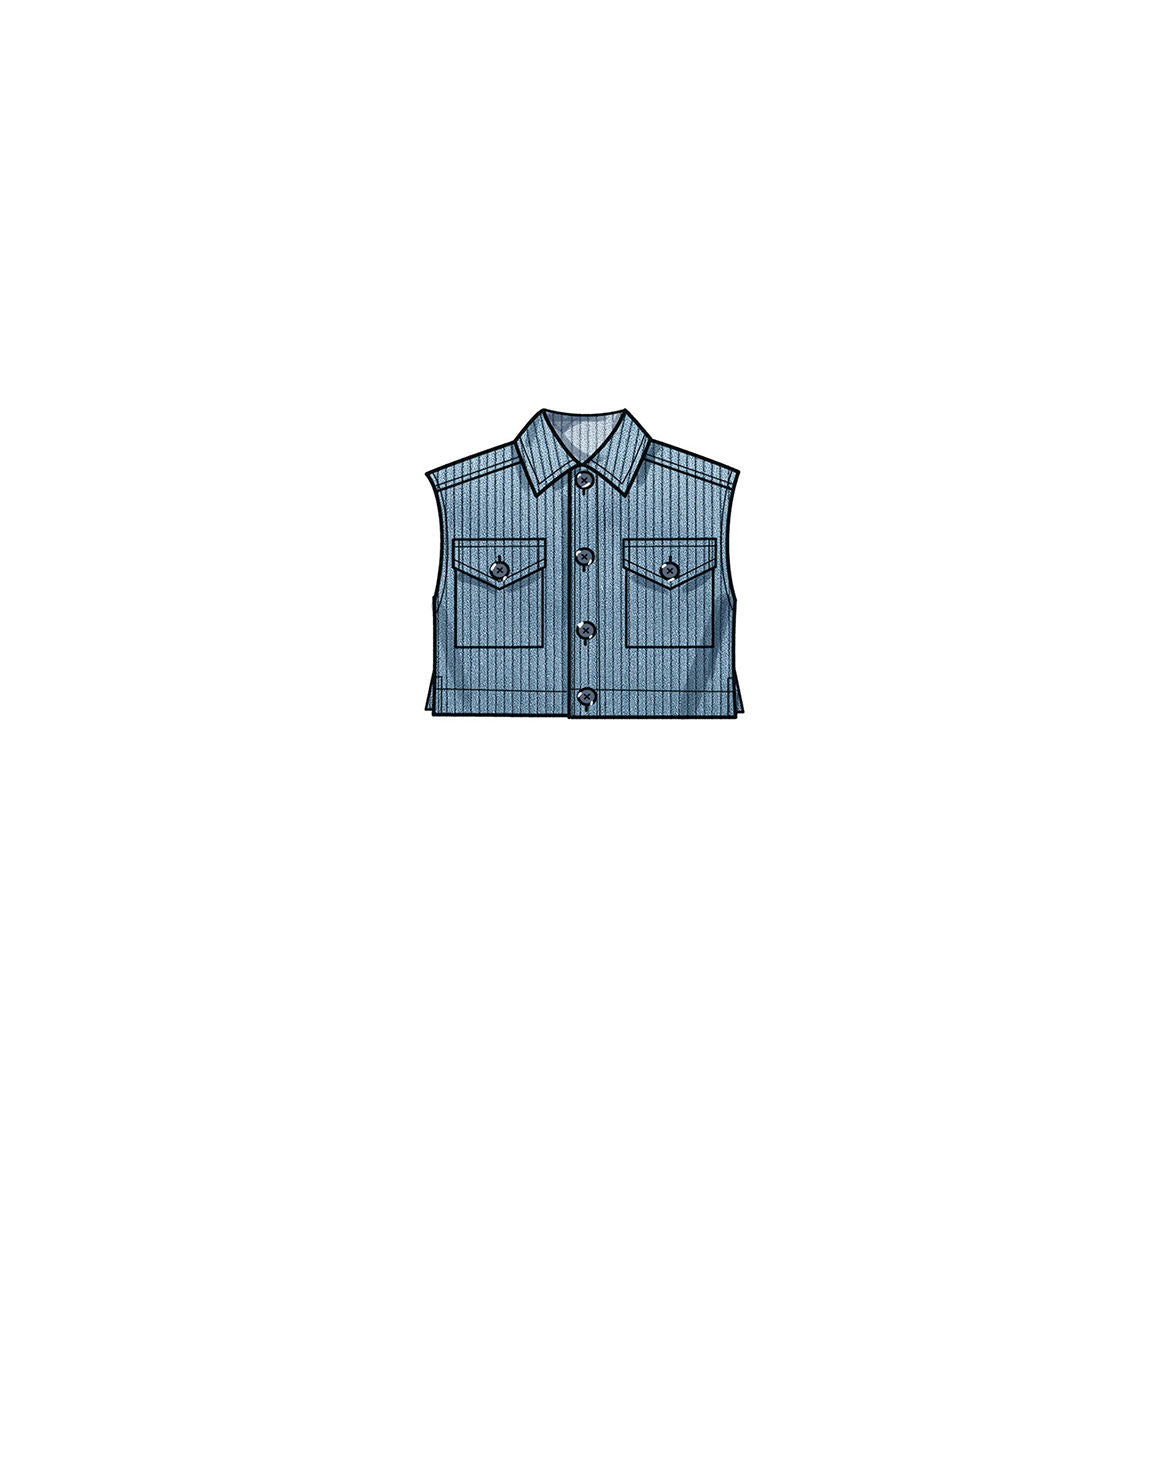 Symønster New Look N6746 - Bukse Vester Skjorte Genser - Jente Gutt | Bilde 4